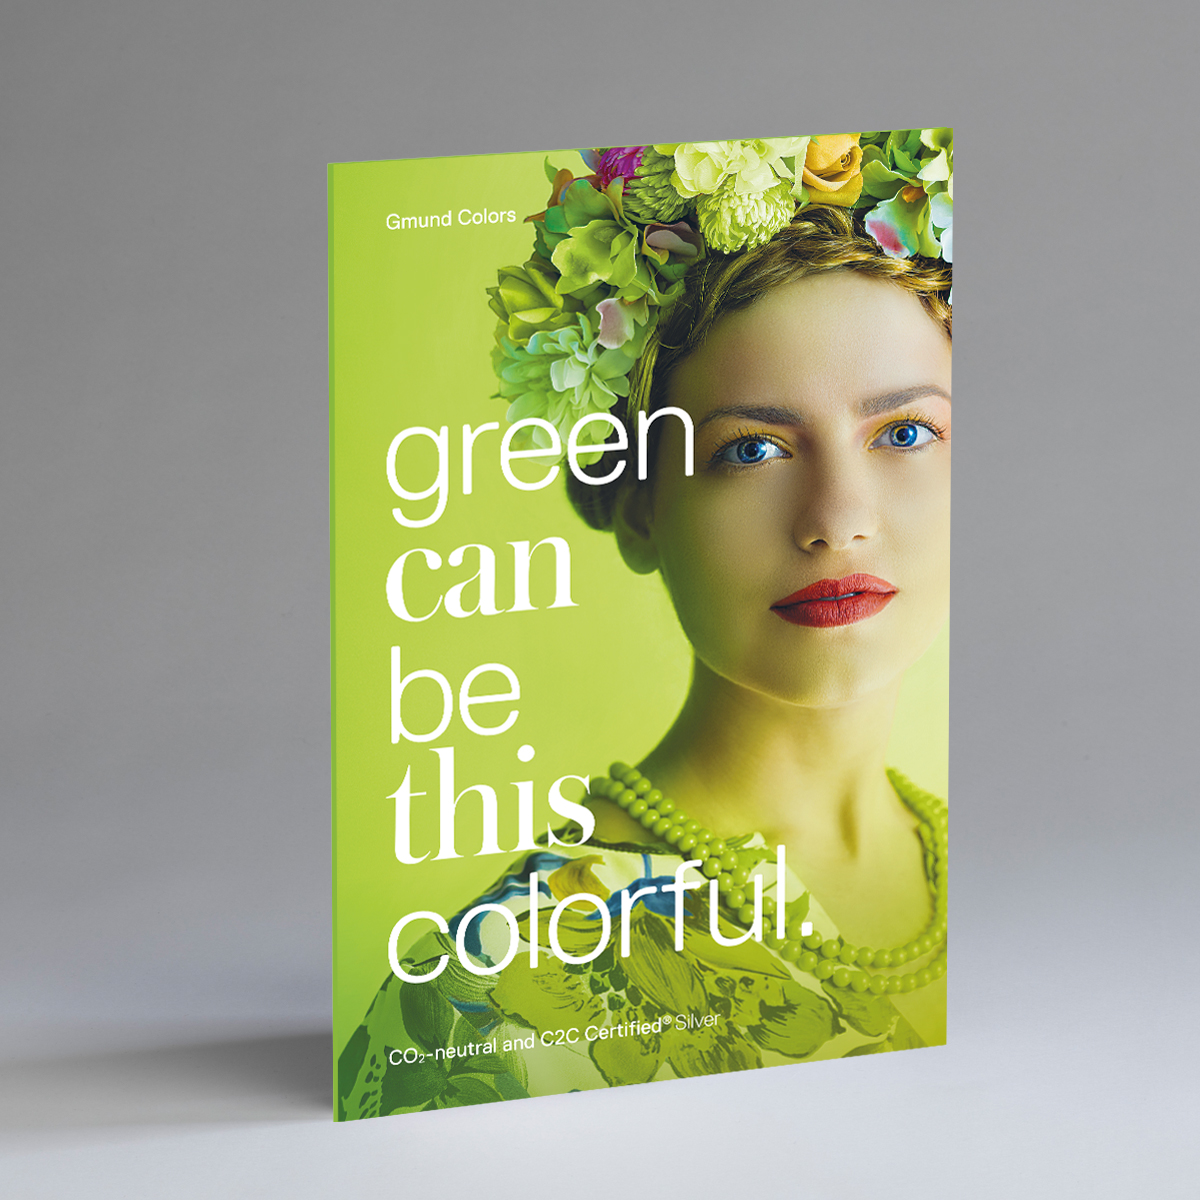 Broschüre Gmund Colors Nachhaltigkeit englisch